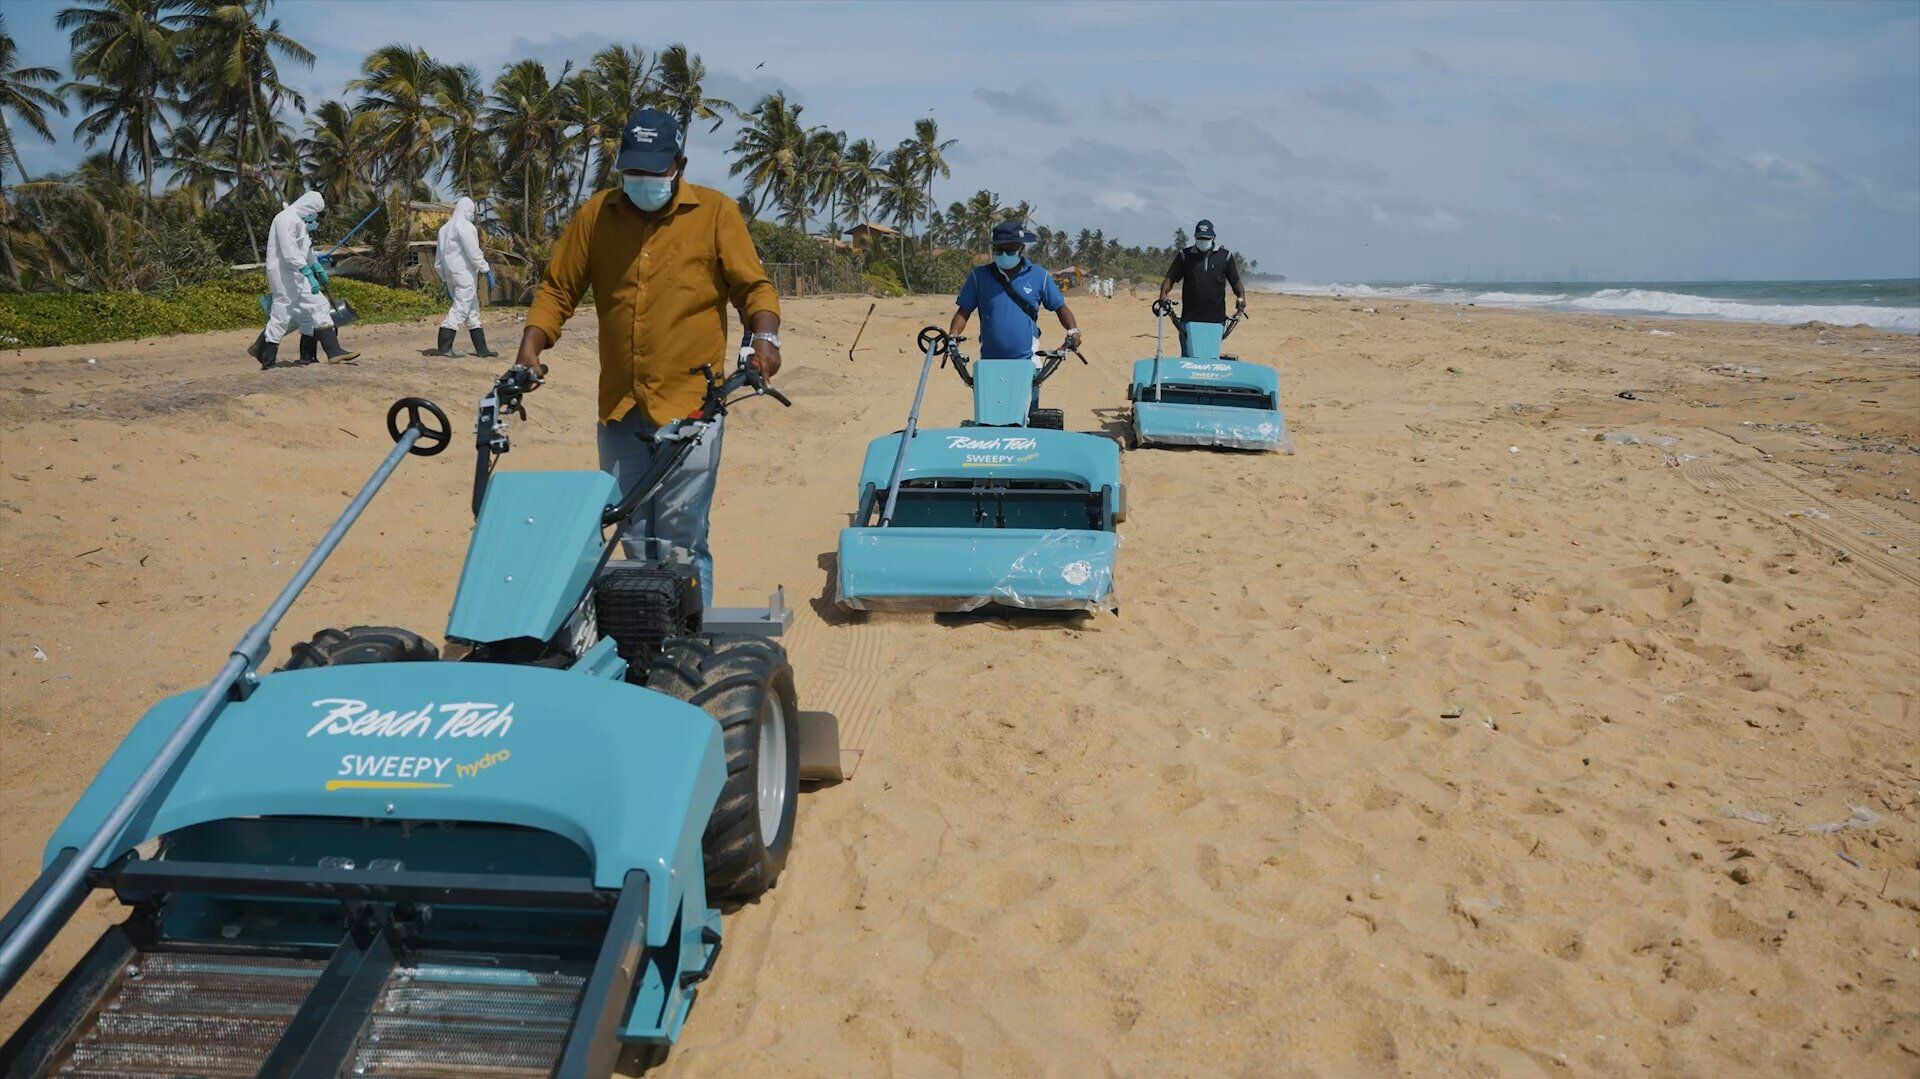 Drei BeachTech Strandreiniger werden am Strand von Sri Lanka eingesetzt, um Nurdles aus dem Sand zu sieben